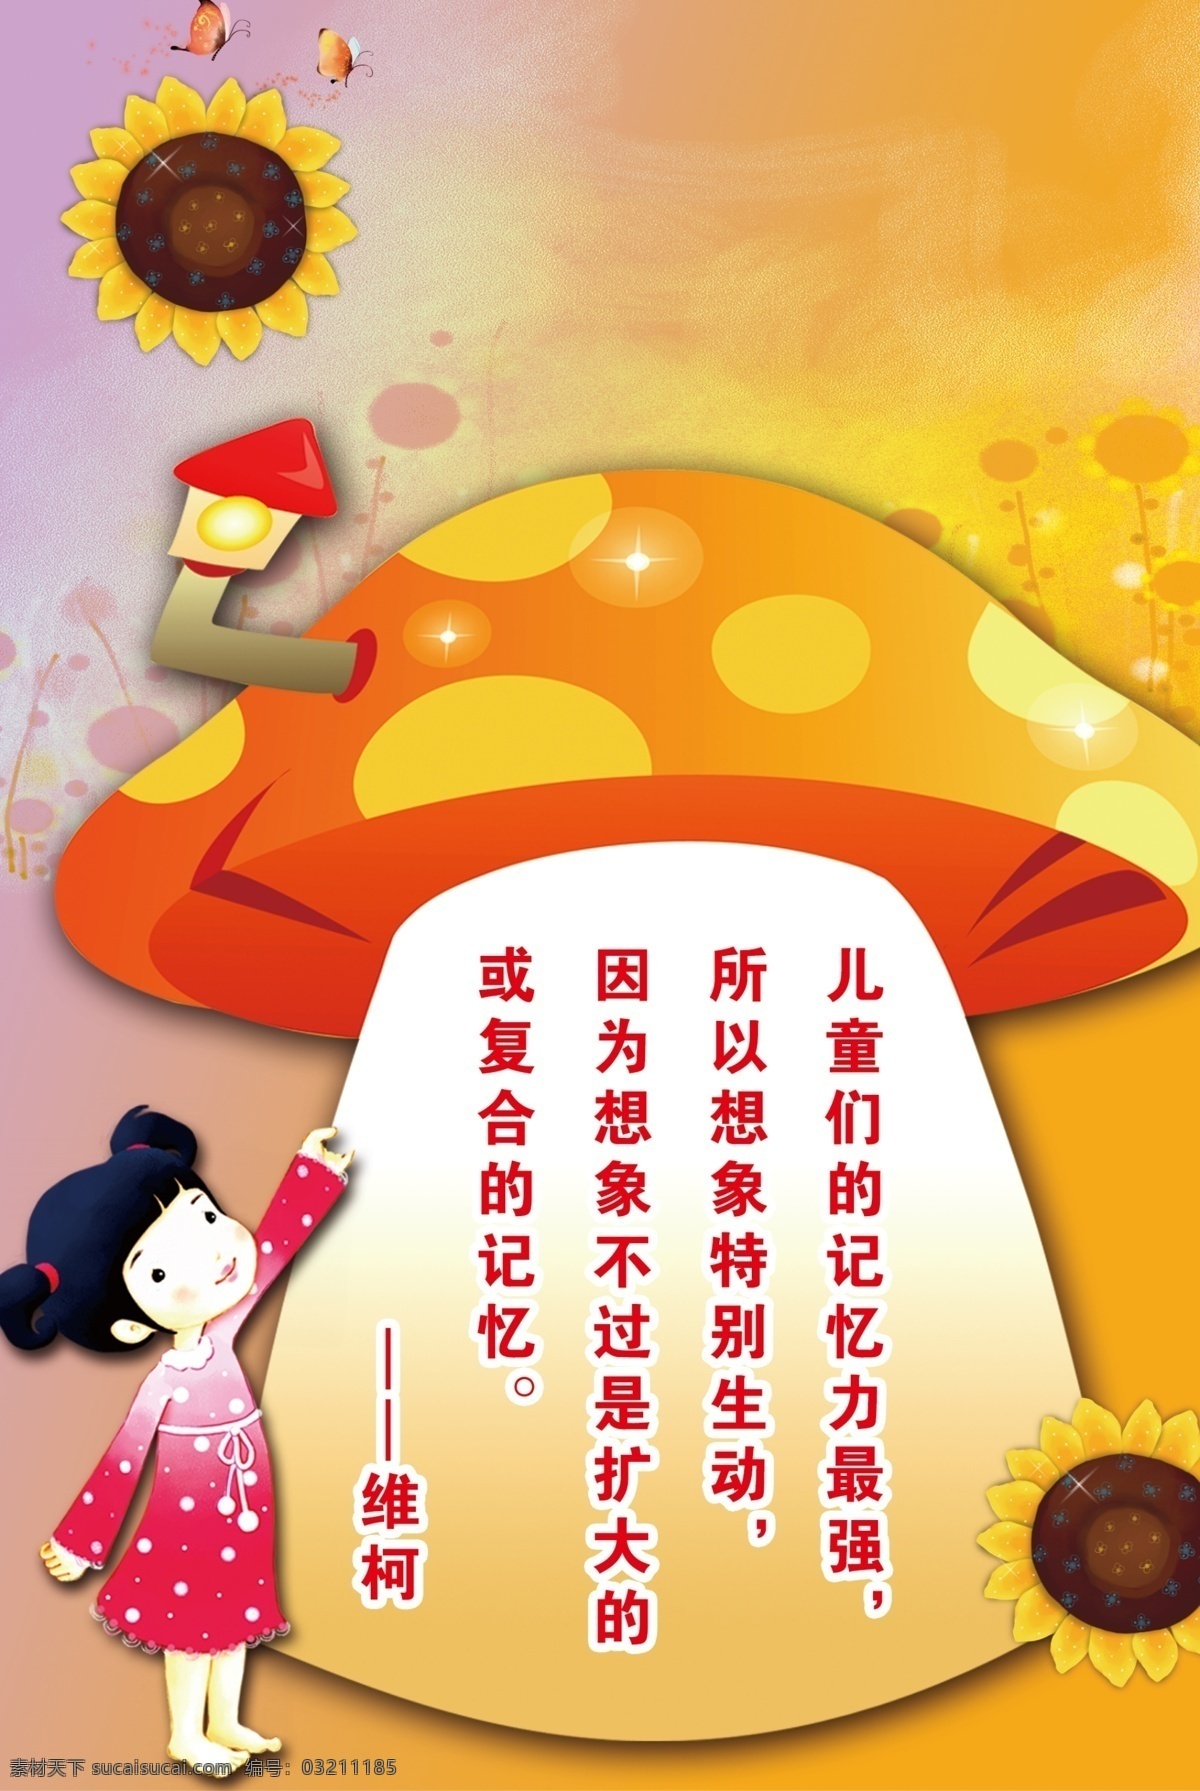 幼儿园 标语 展板 卡通人物 蘑菇 向日葵 展板模板 广告设计模板 源文件